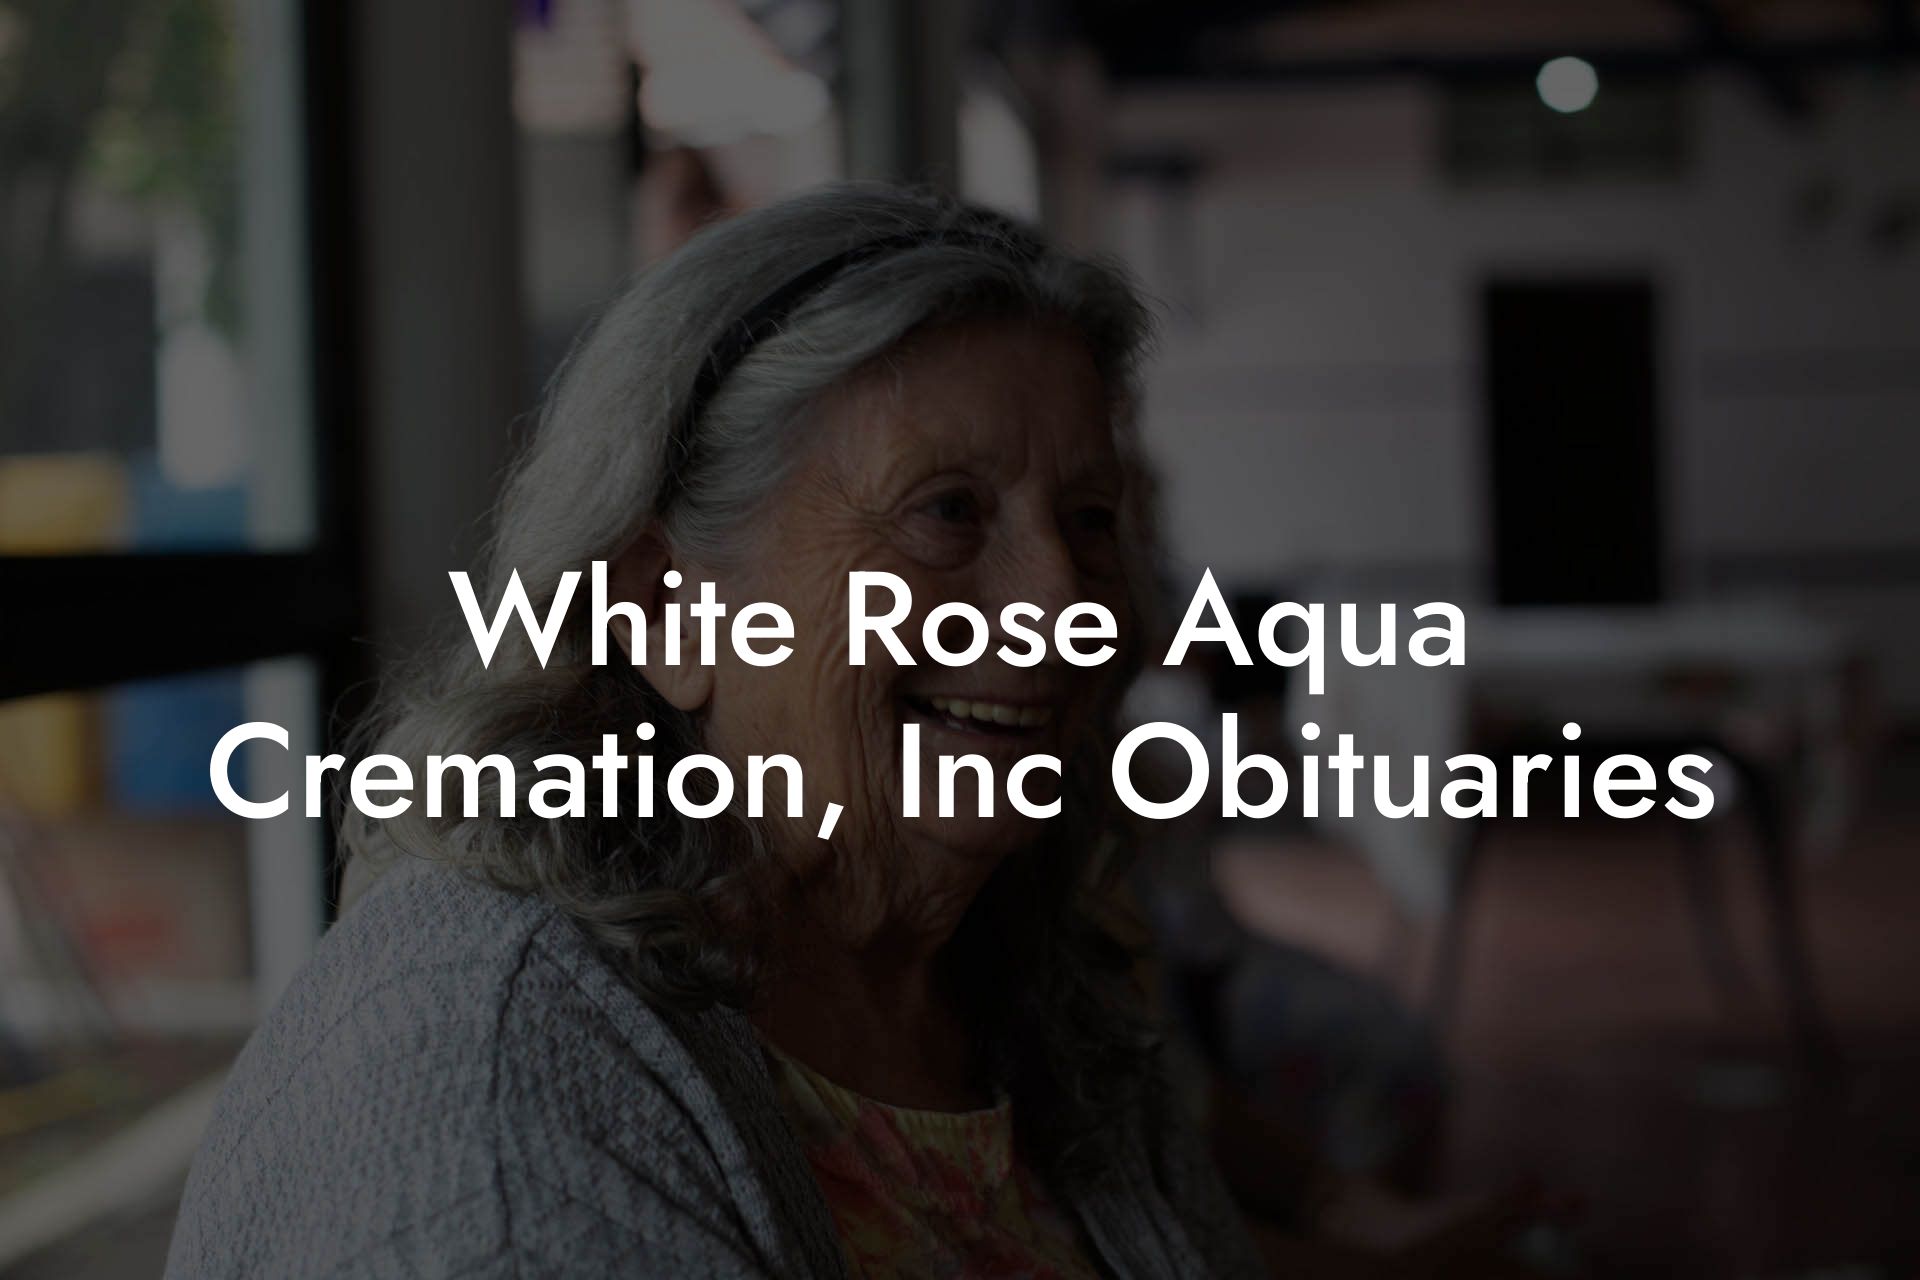 White Rose Aqua Cremation, Inc Obituaries